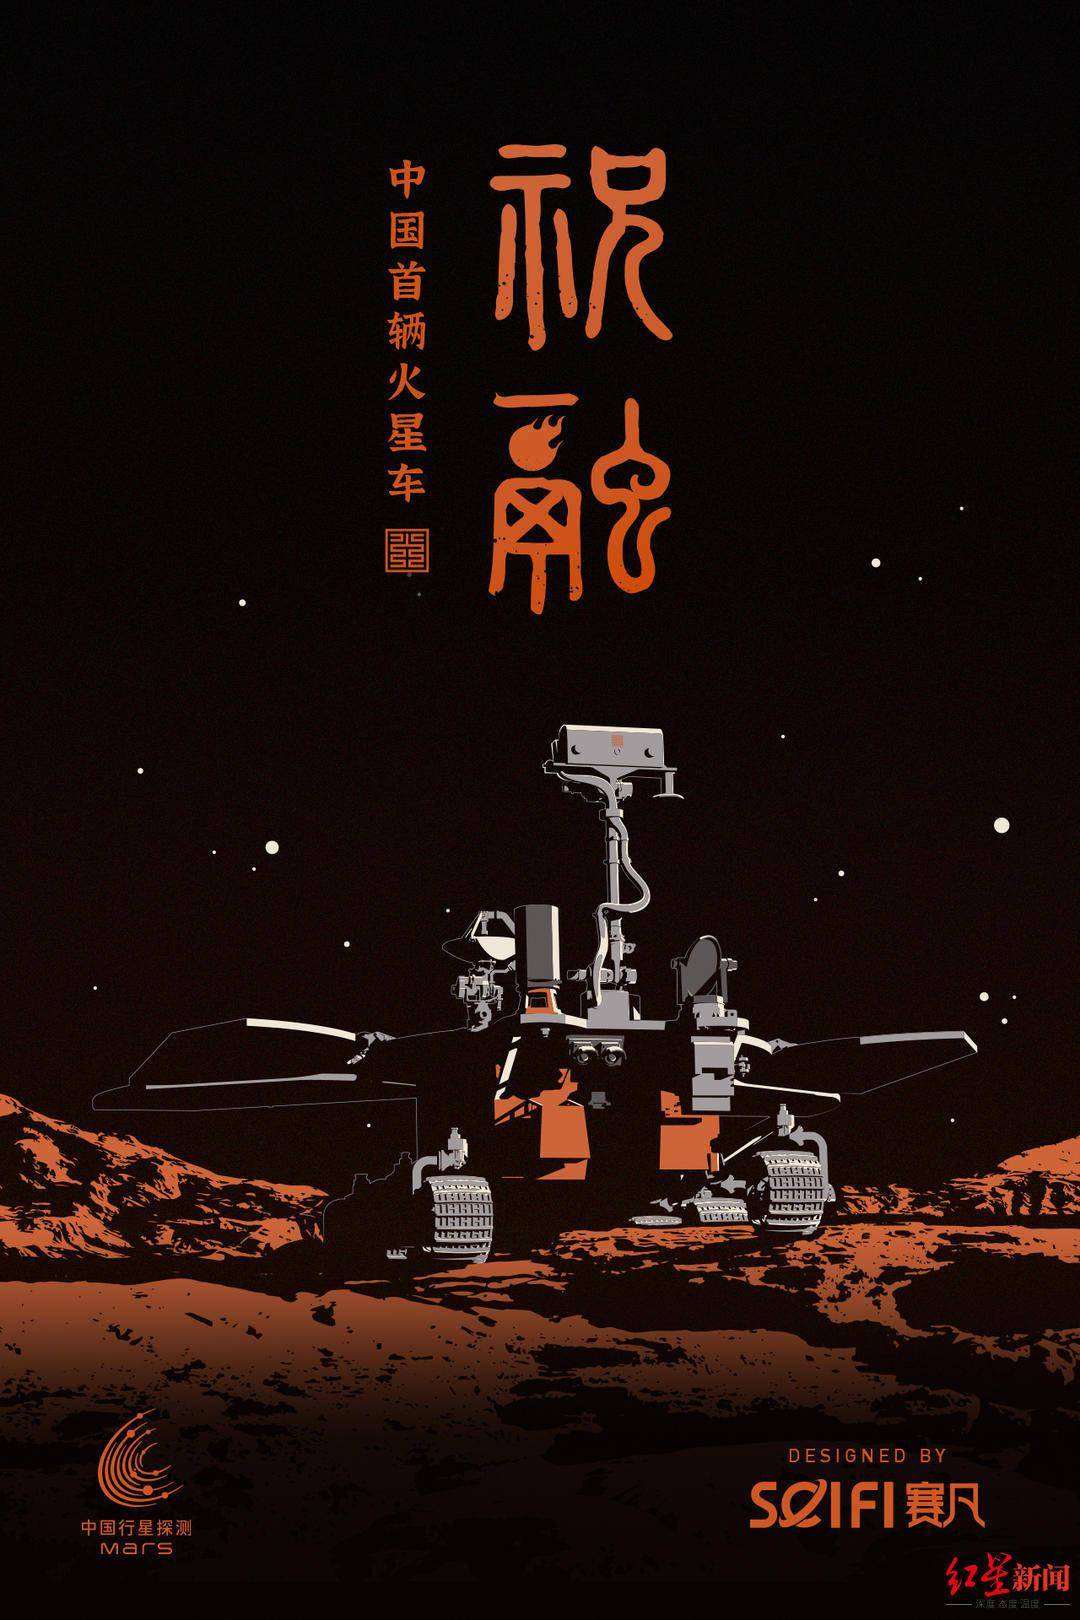 专访中国火星车祝融虚拟形象设计团队:打造属于中国的